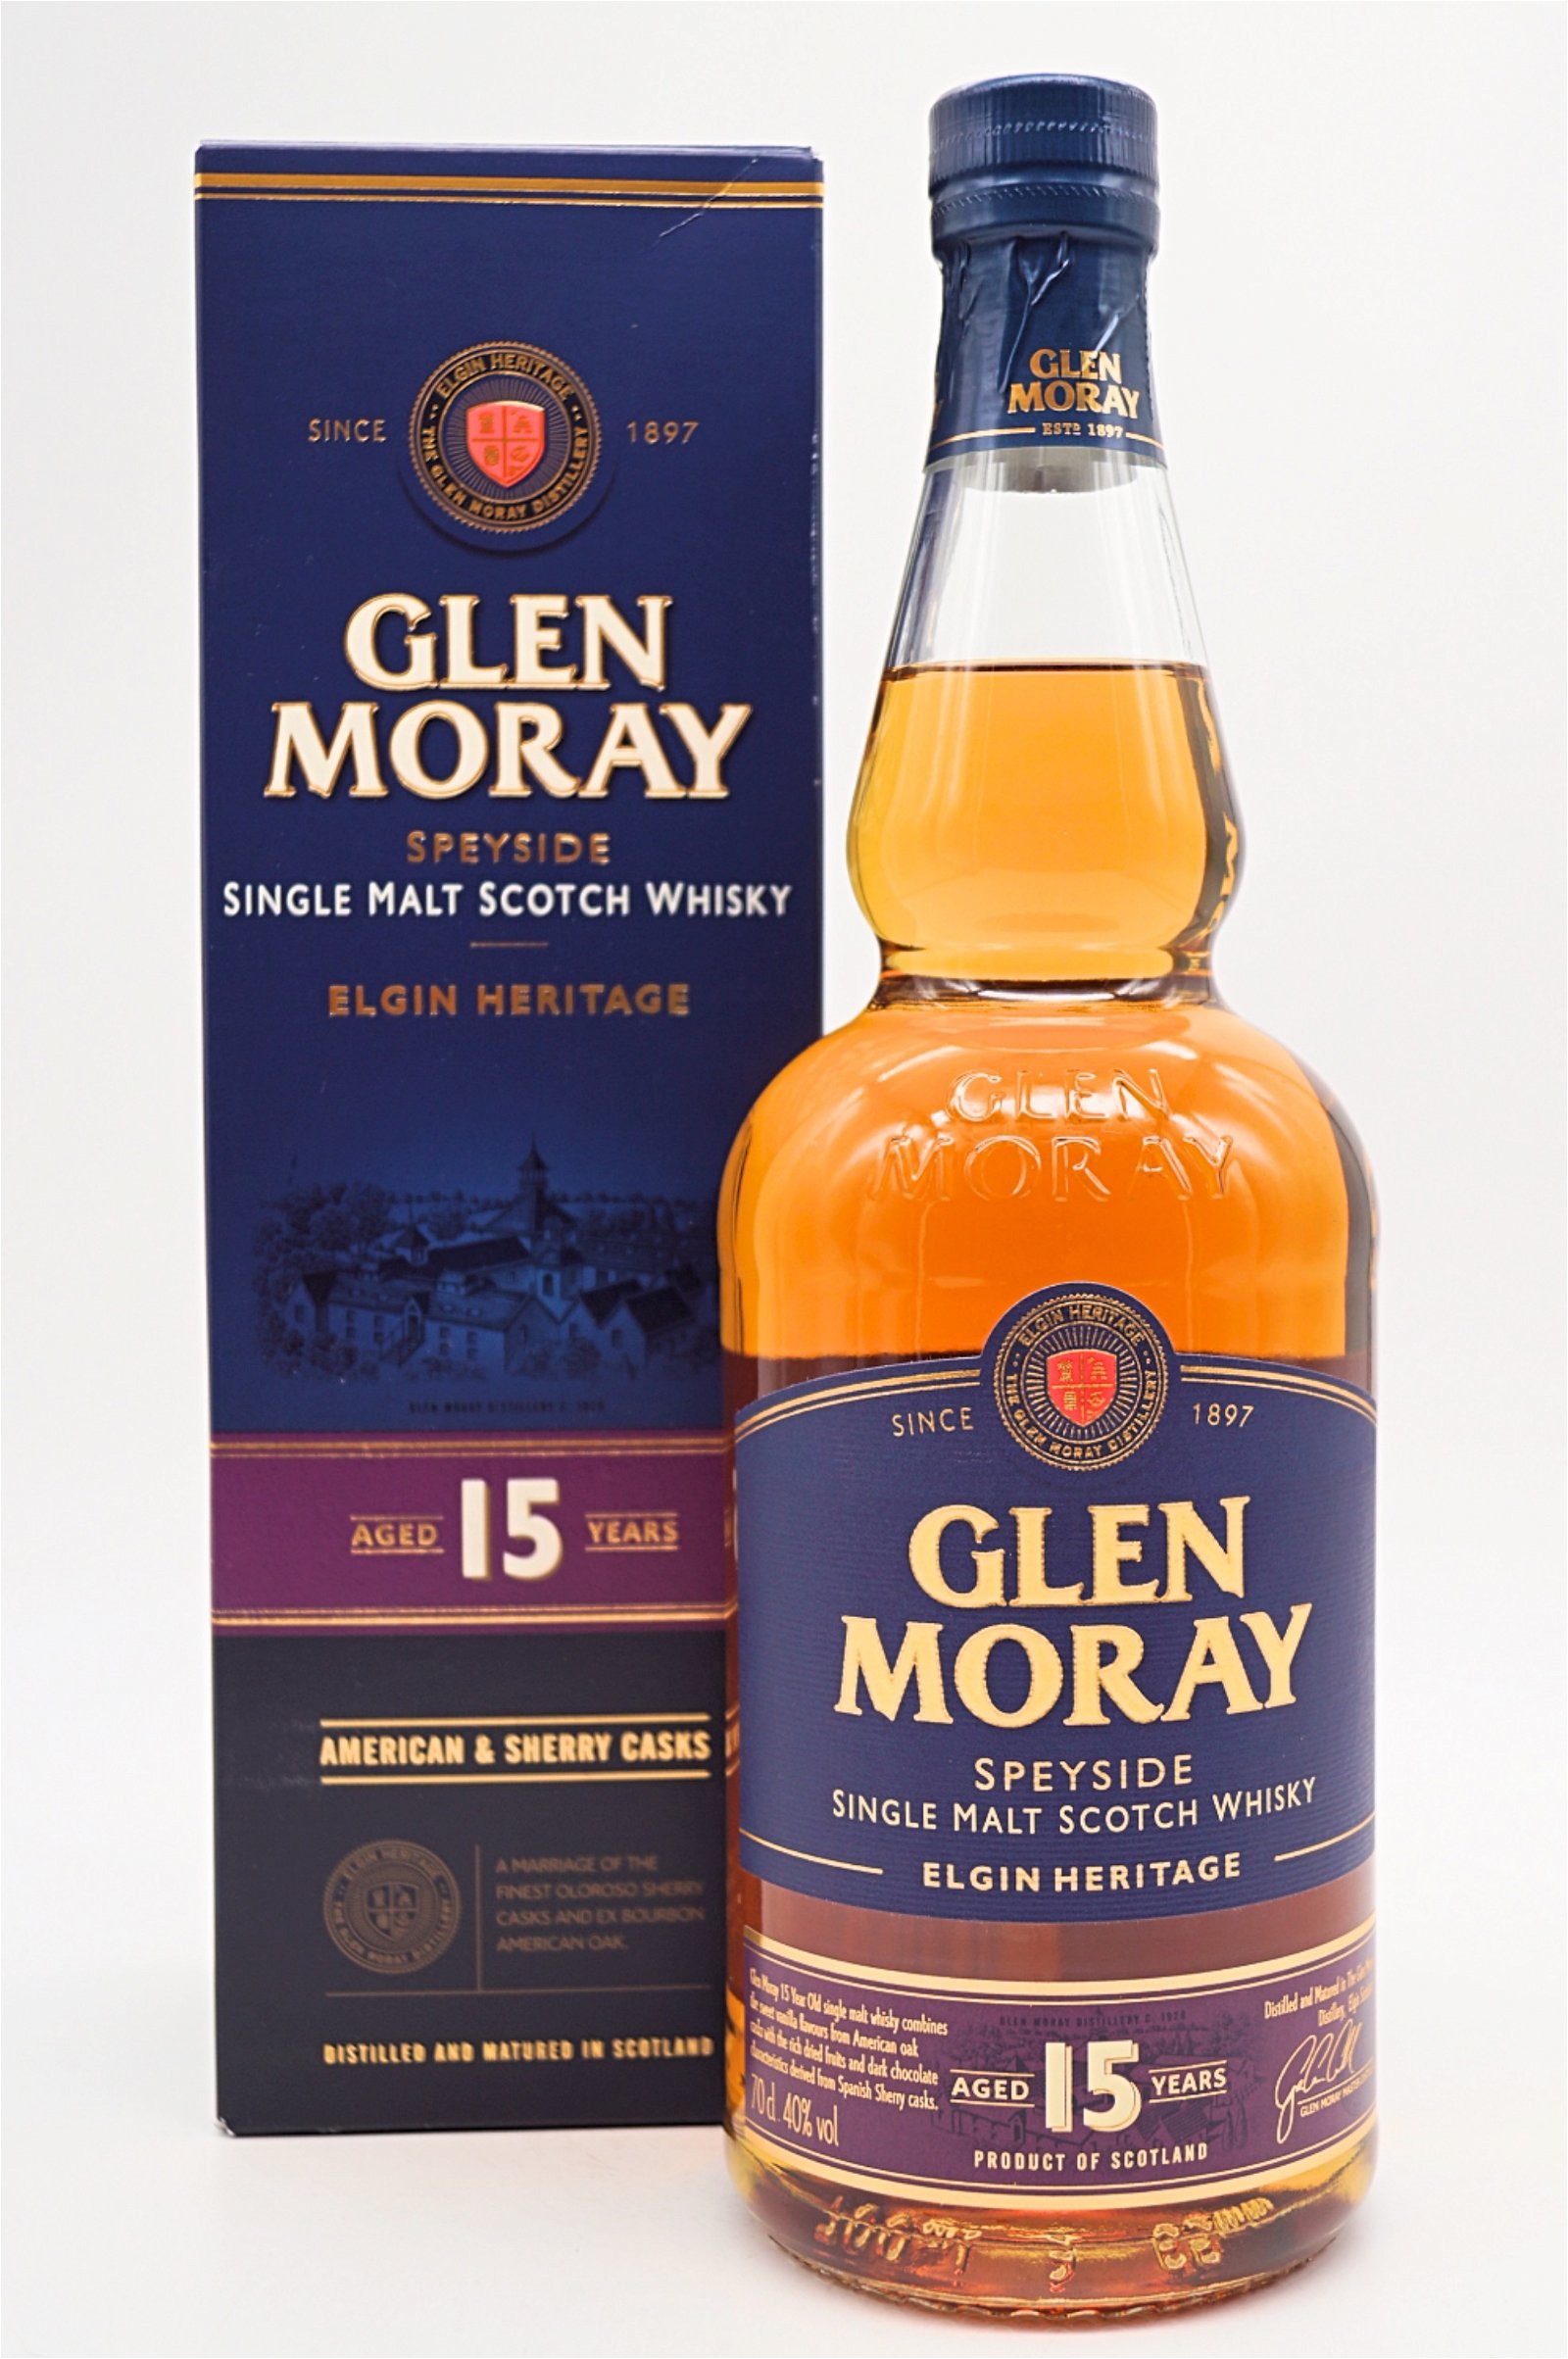 Glen Moray 15 Jahre Elgin Heritage American & Sherry Cask Single Malt Scotch Whisky